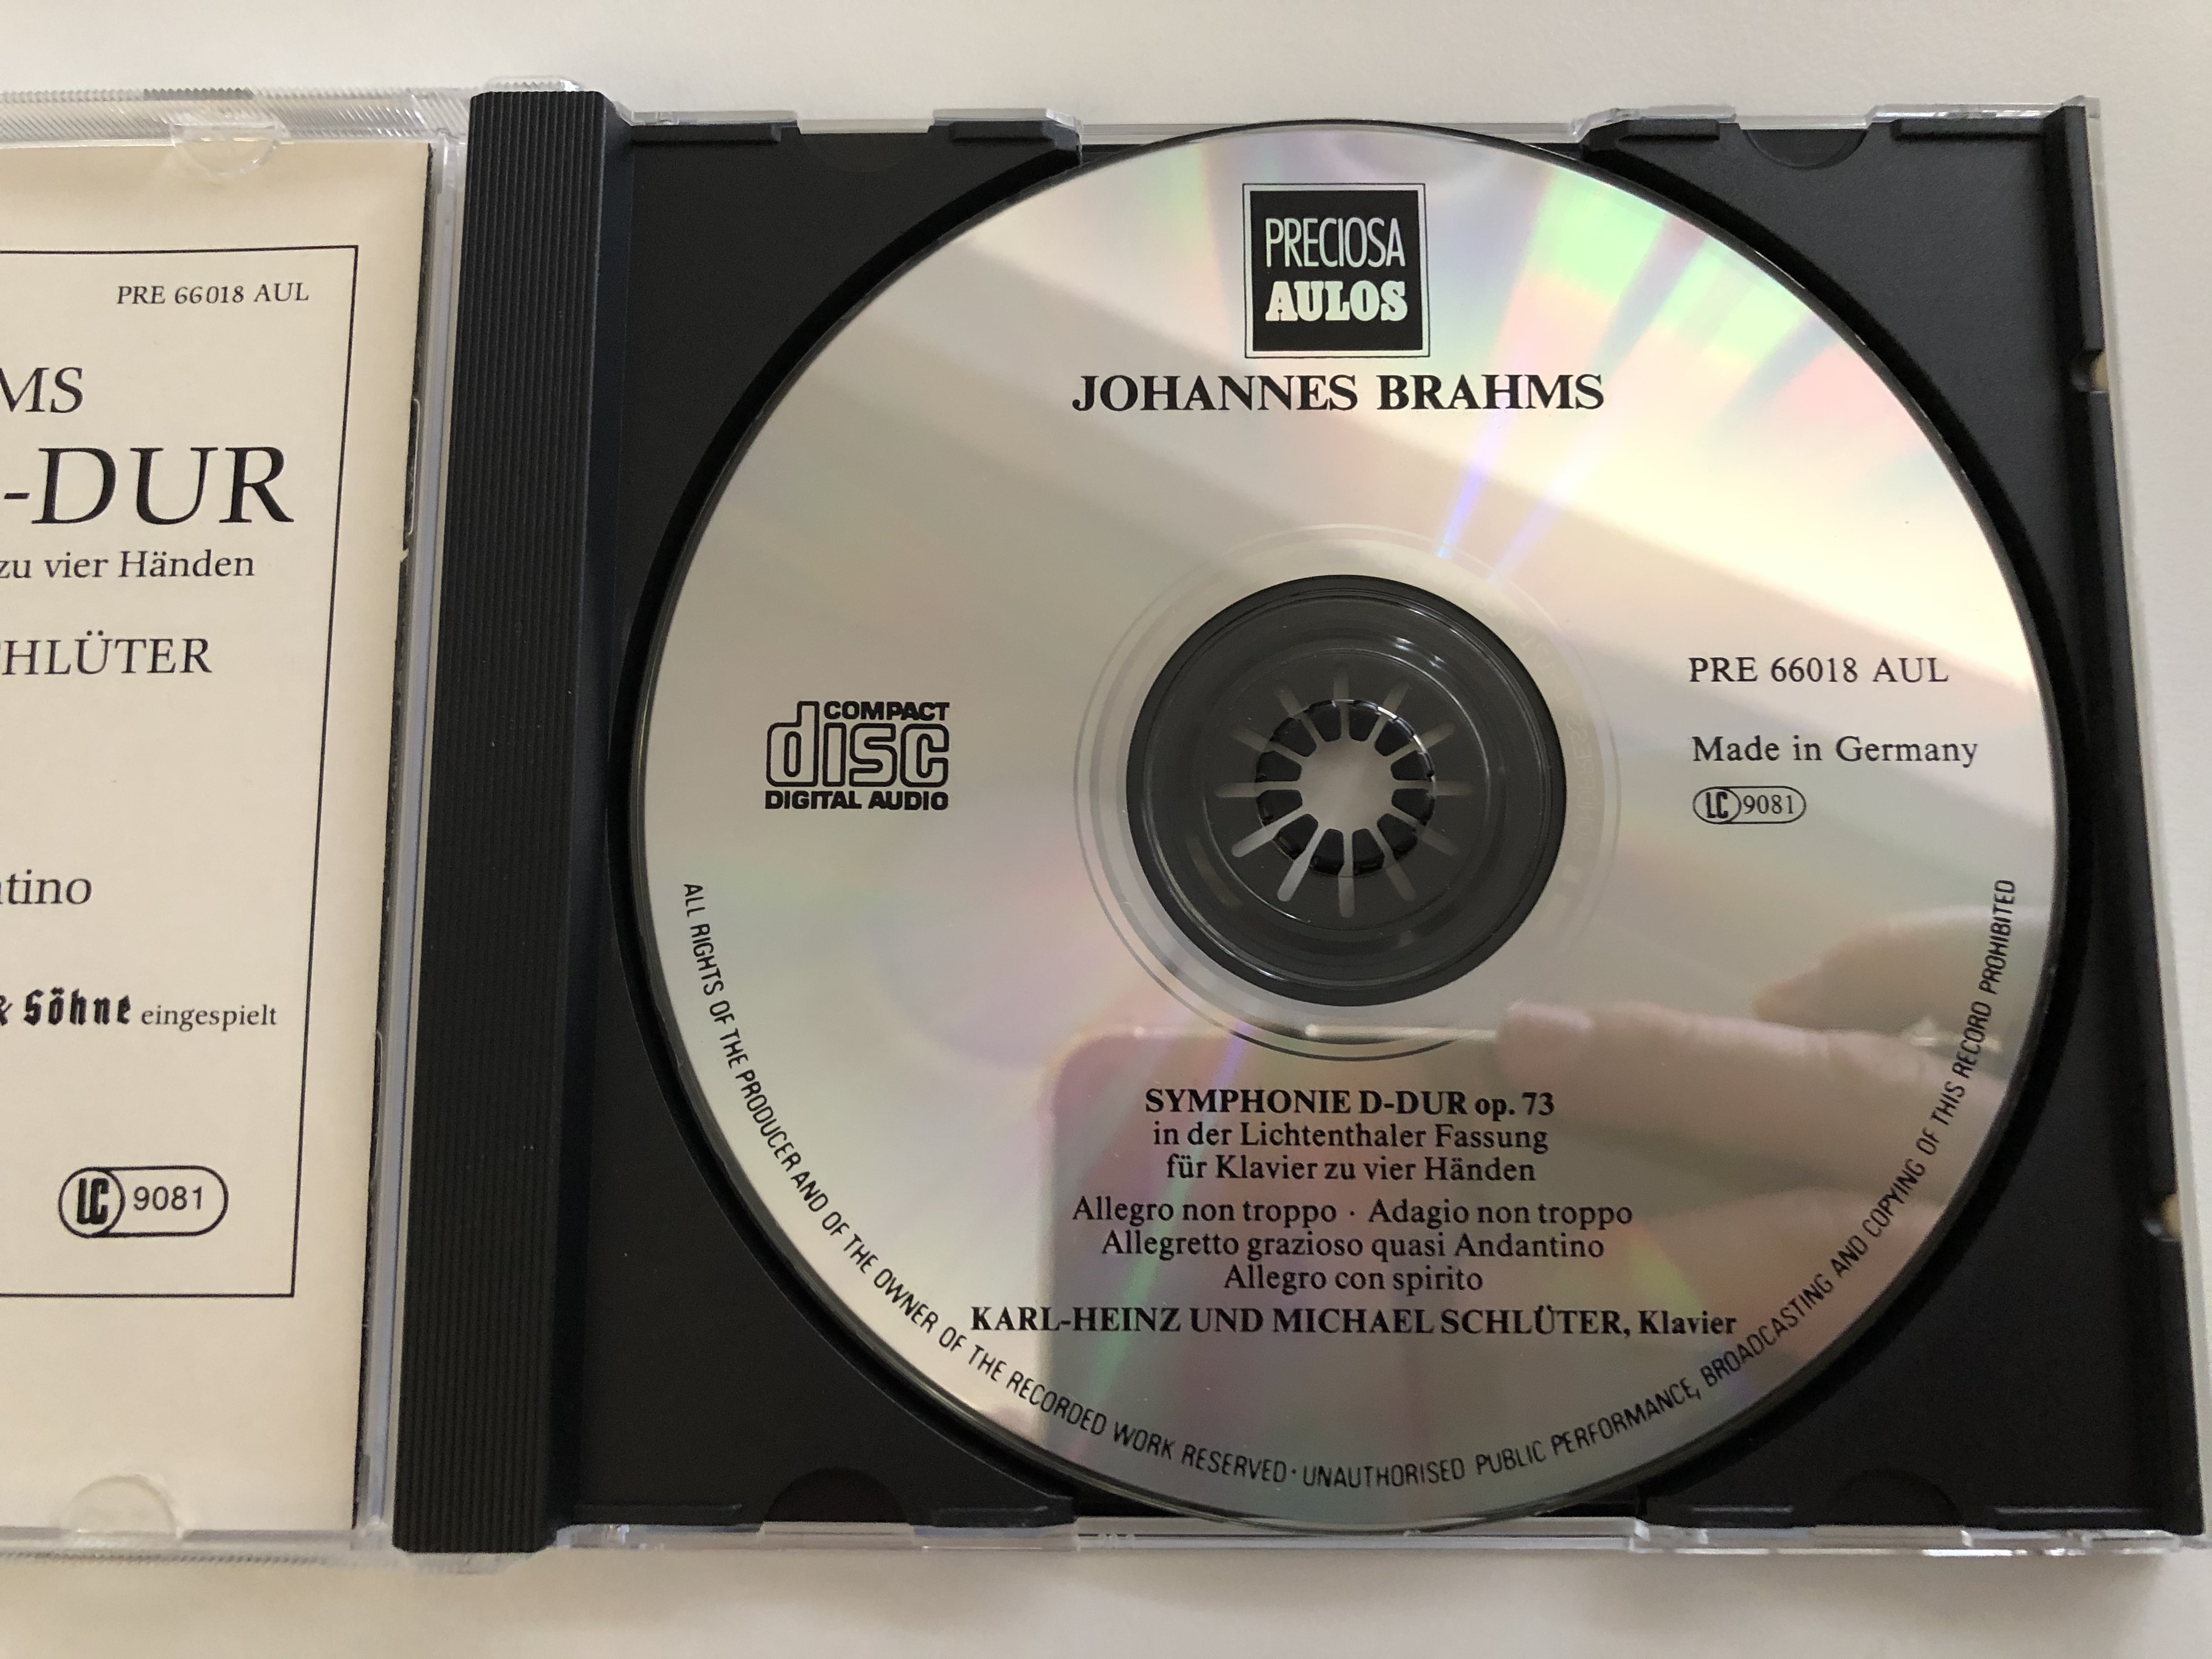 johannes-brahms-symphonie-d-dur-op.-73-fur-klavier-zu-vier-handen-lichtenthaler-fassung-karl-heinz-und-michael-schluter-preciosa-aulos-audio-cd-pre-66018-aul-5-.jpg